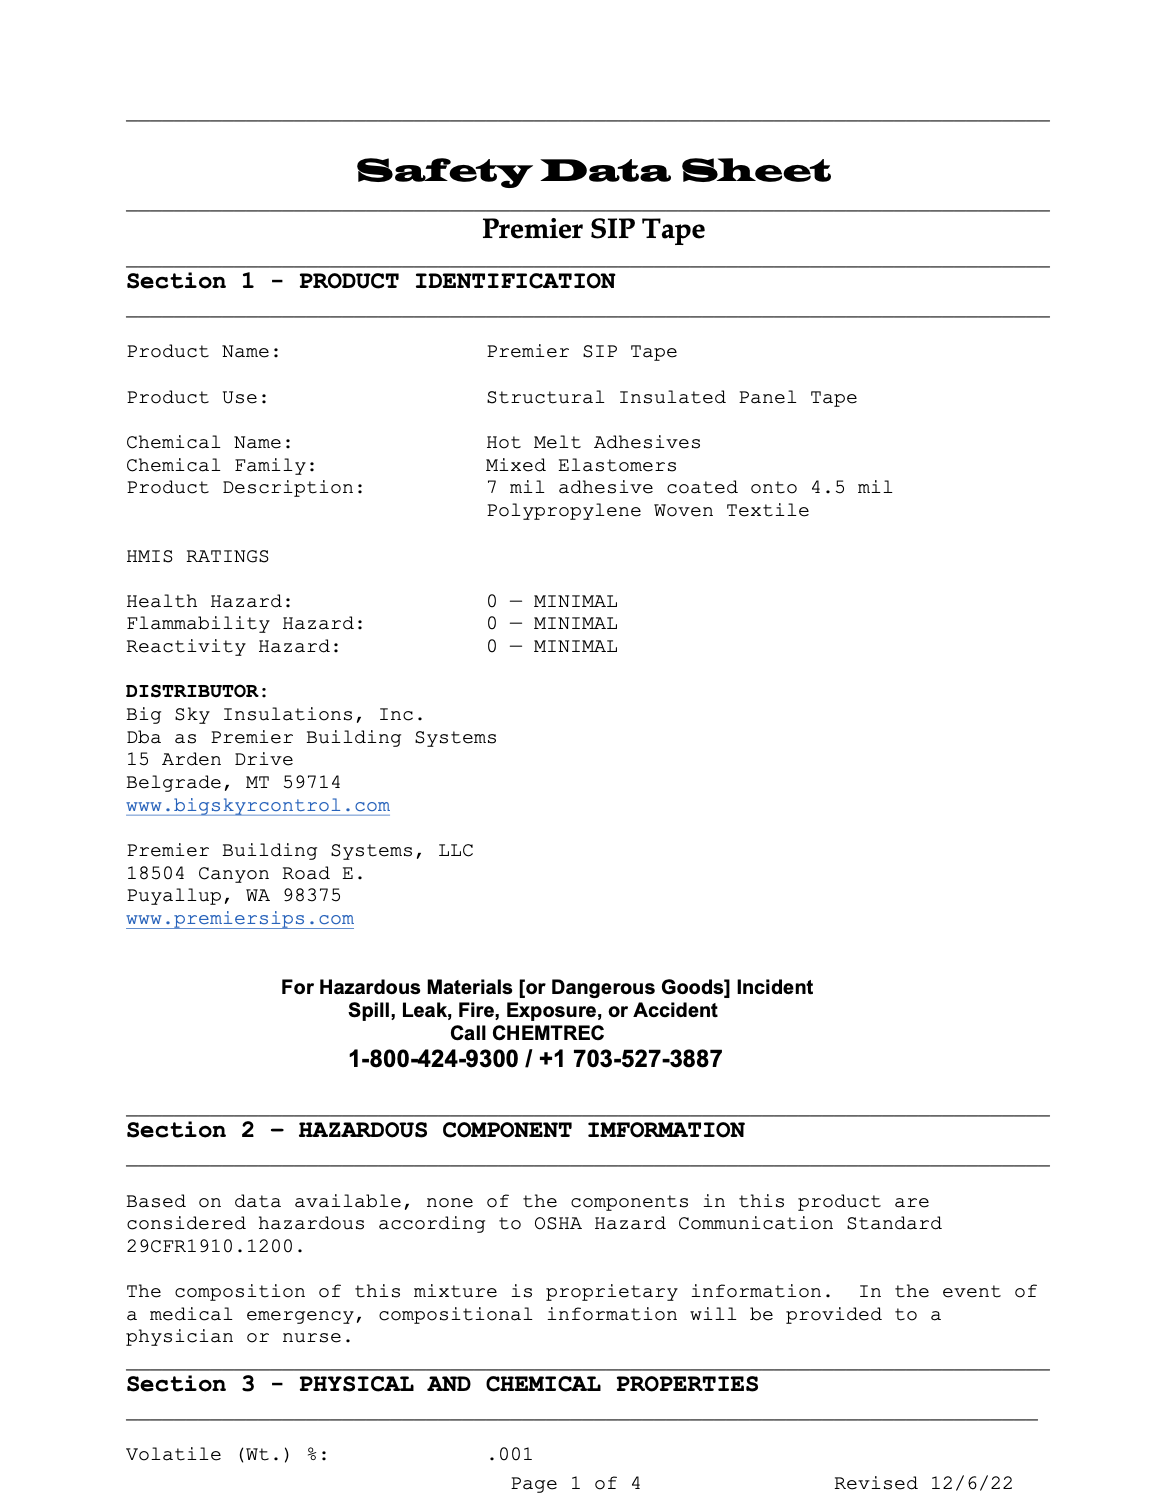 Premier SIP Tape SDS Safety Data Sheet